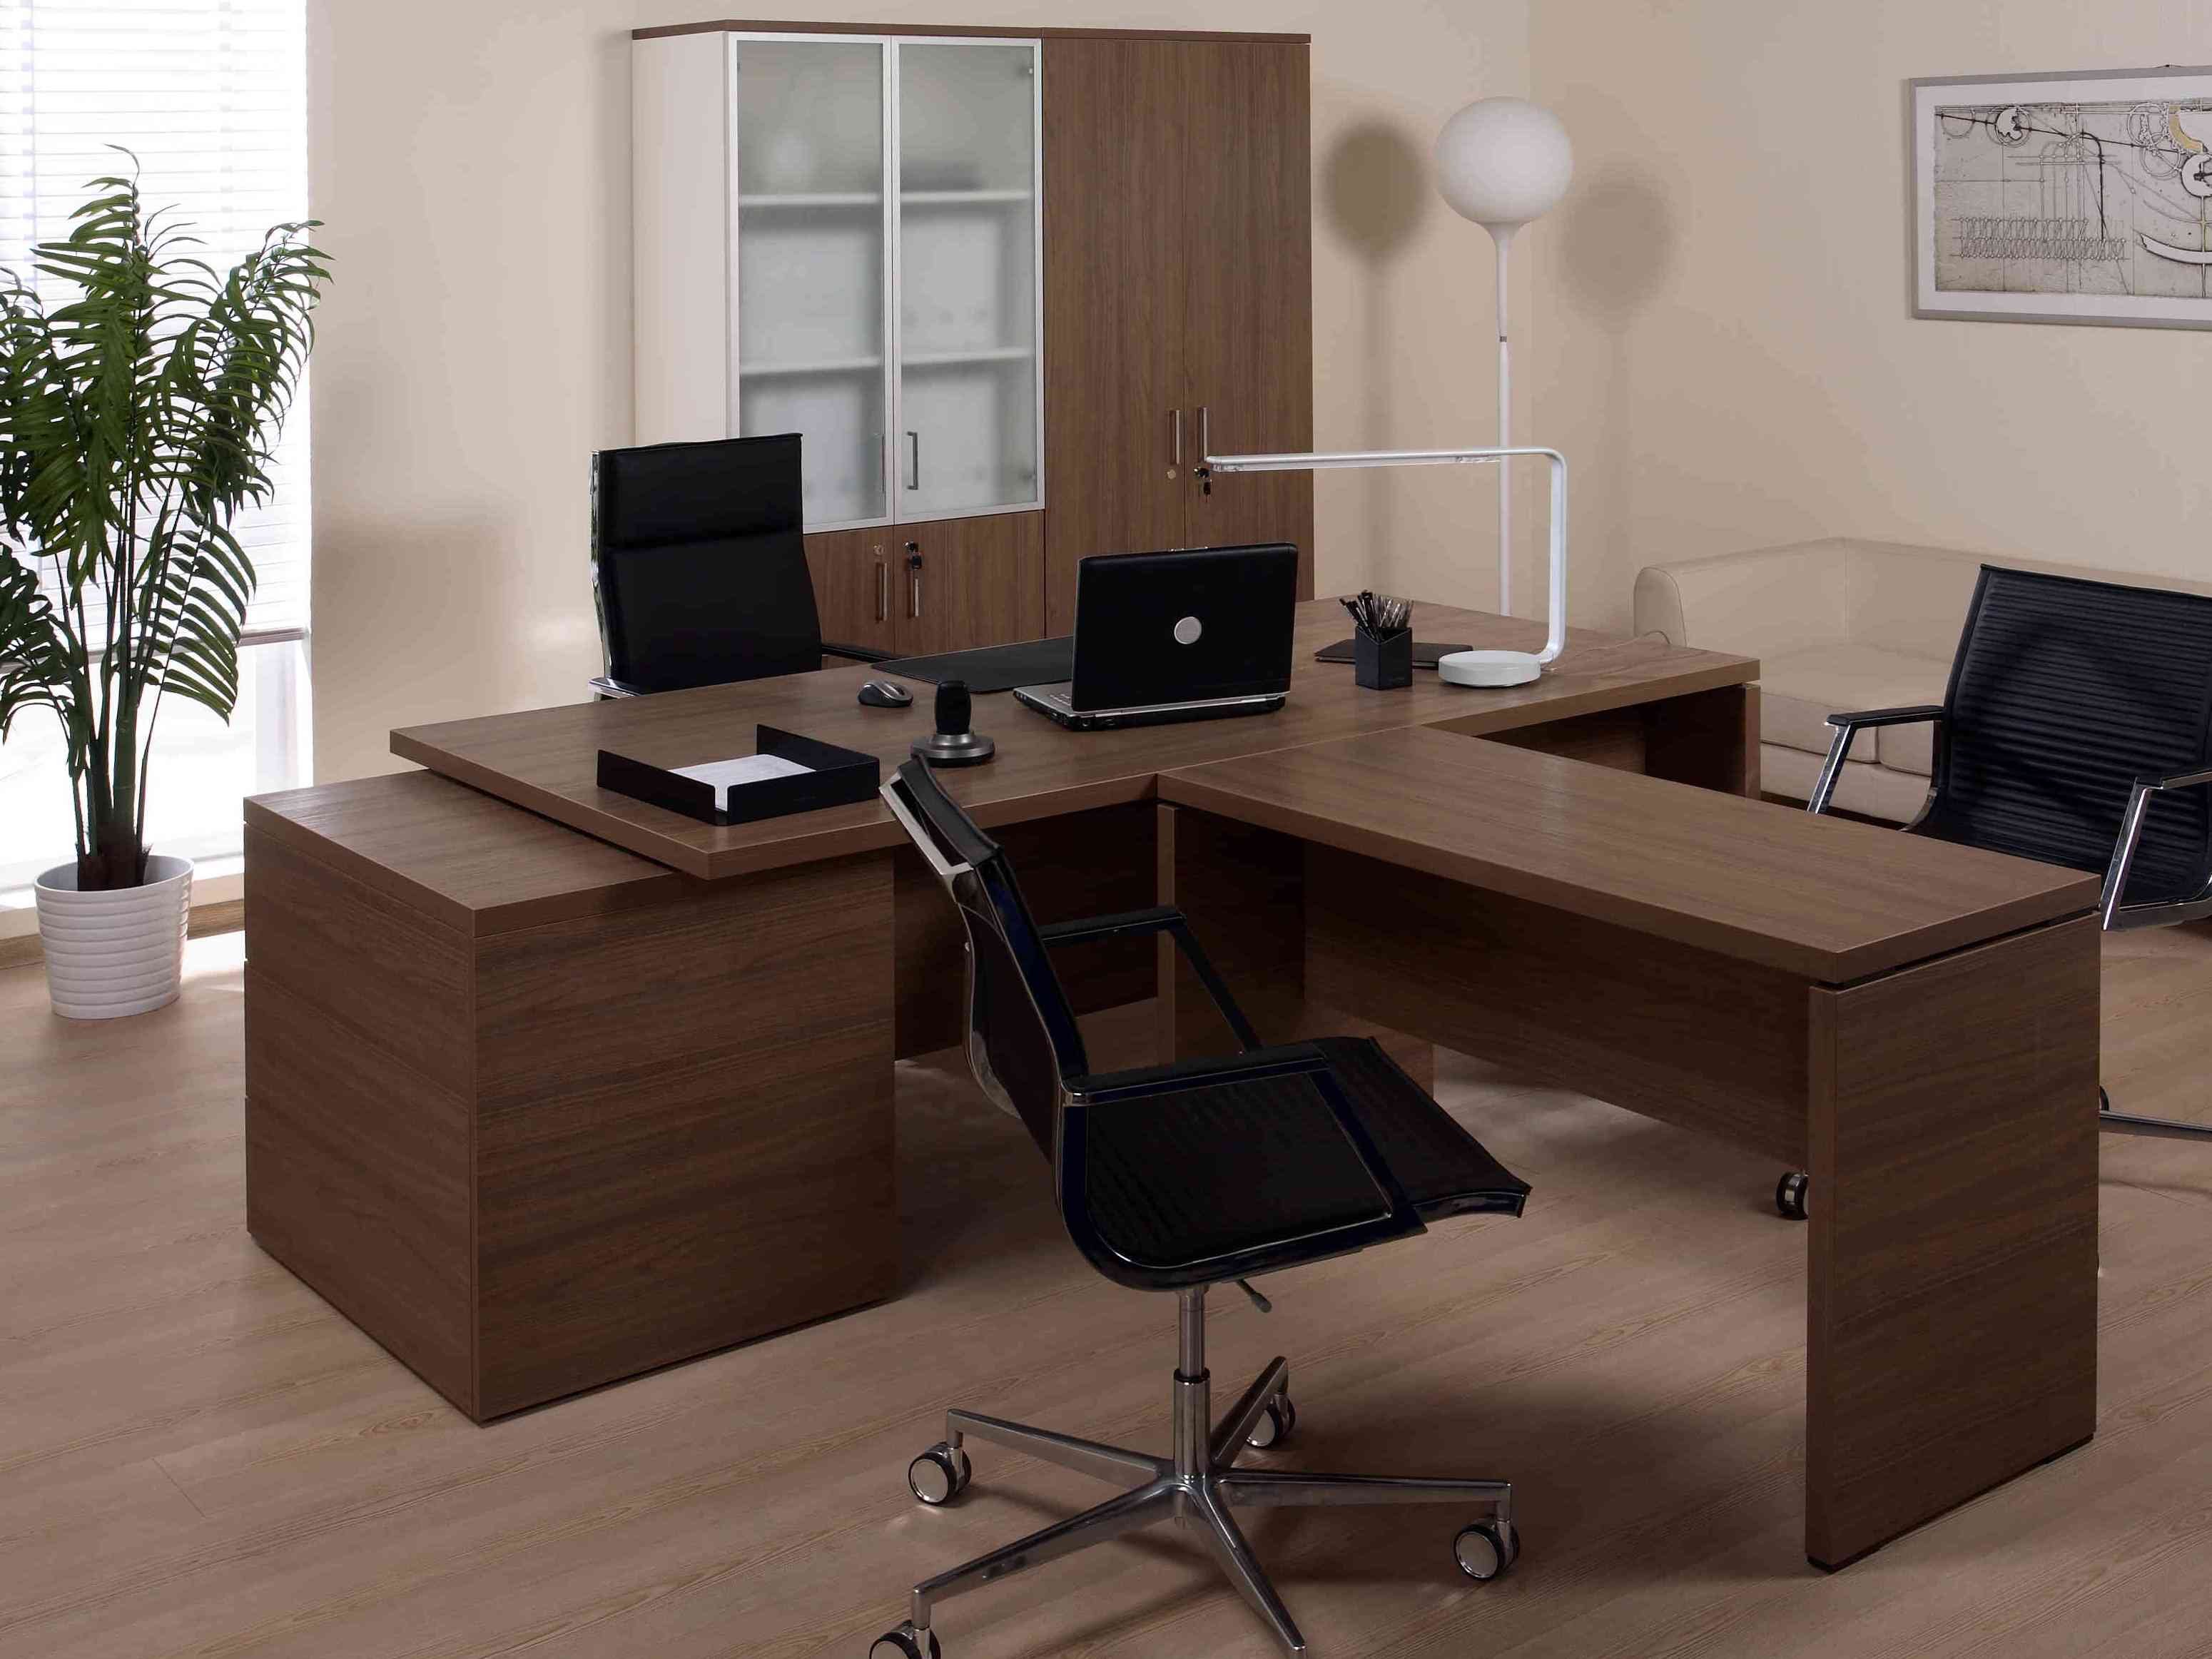 Комплект мебели для кабинета. Стол руководителя Камбио босс bxt180. Кабинет руководителя Taim-Max.